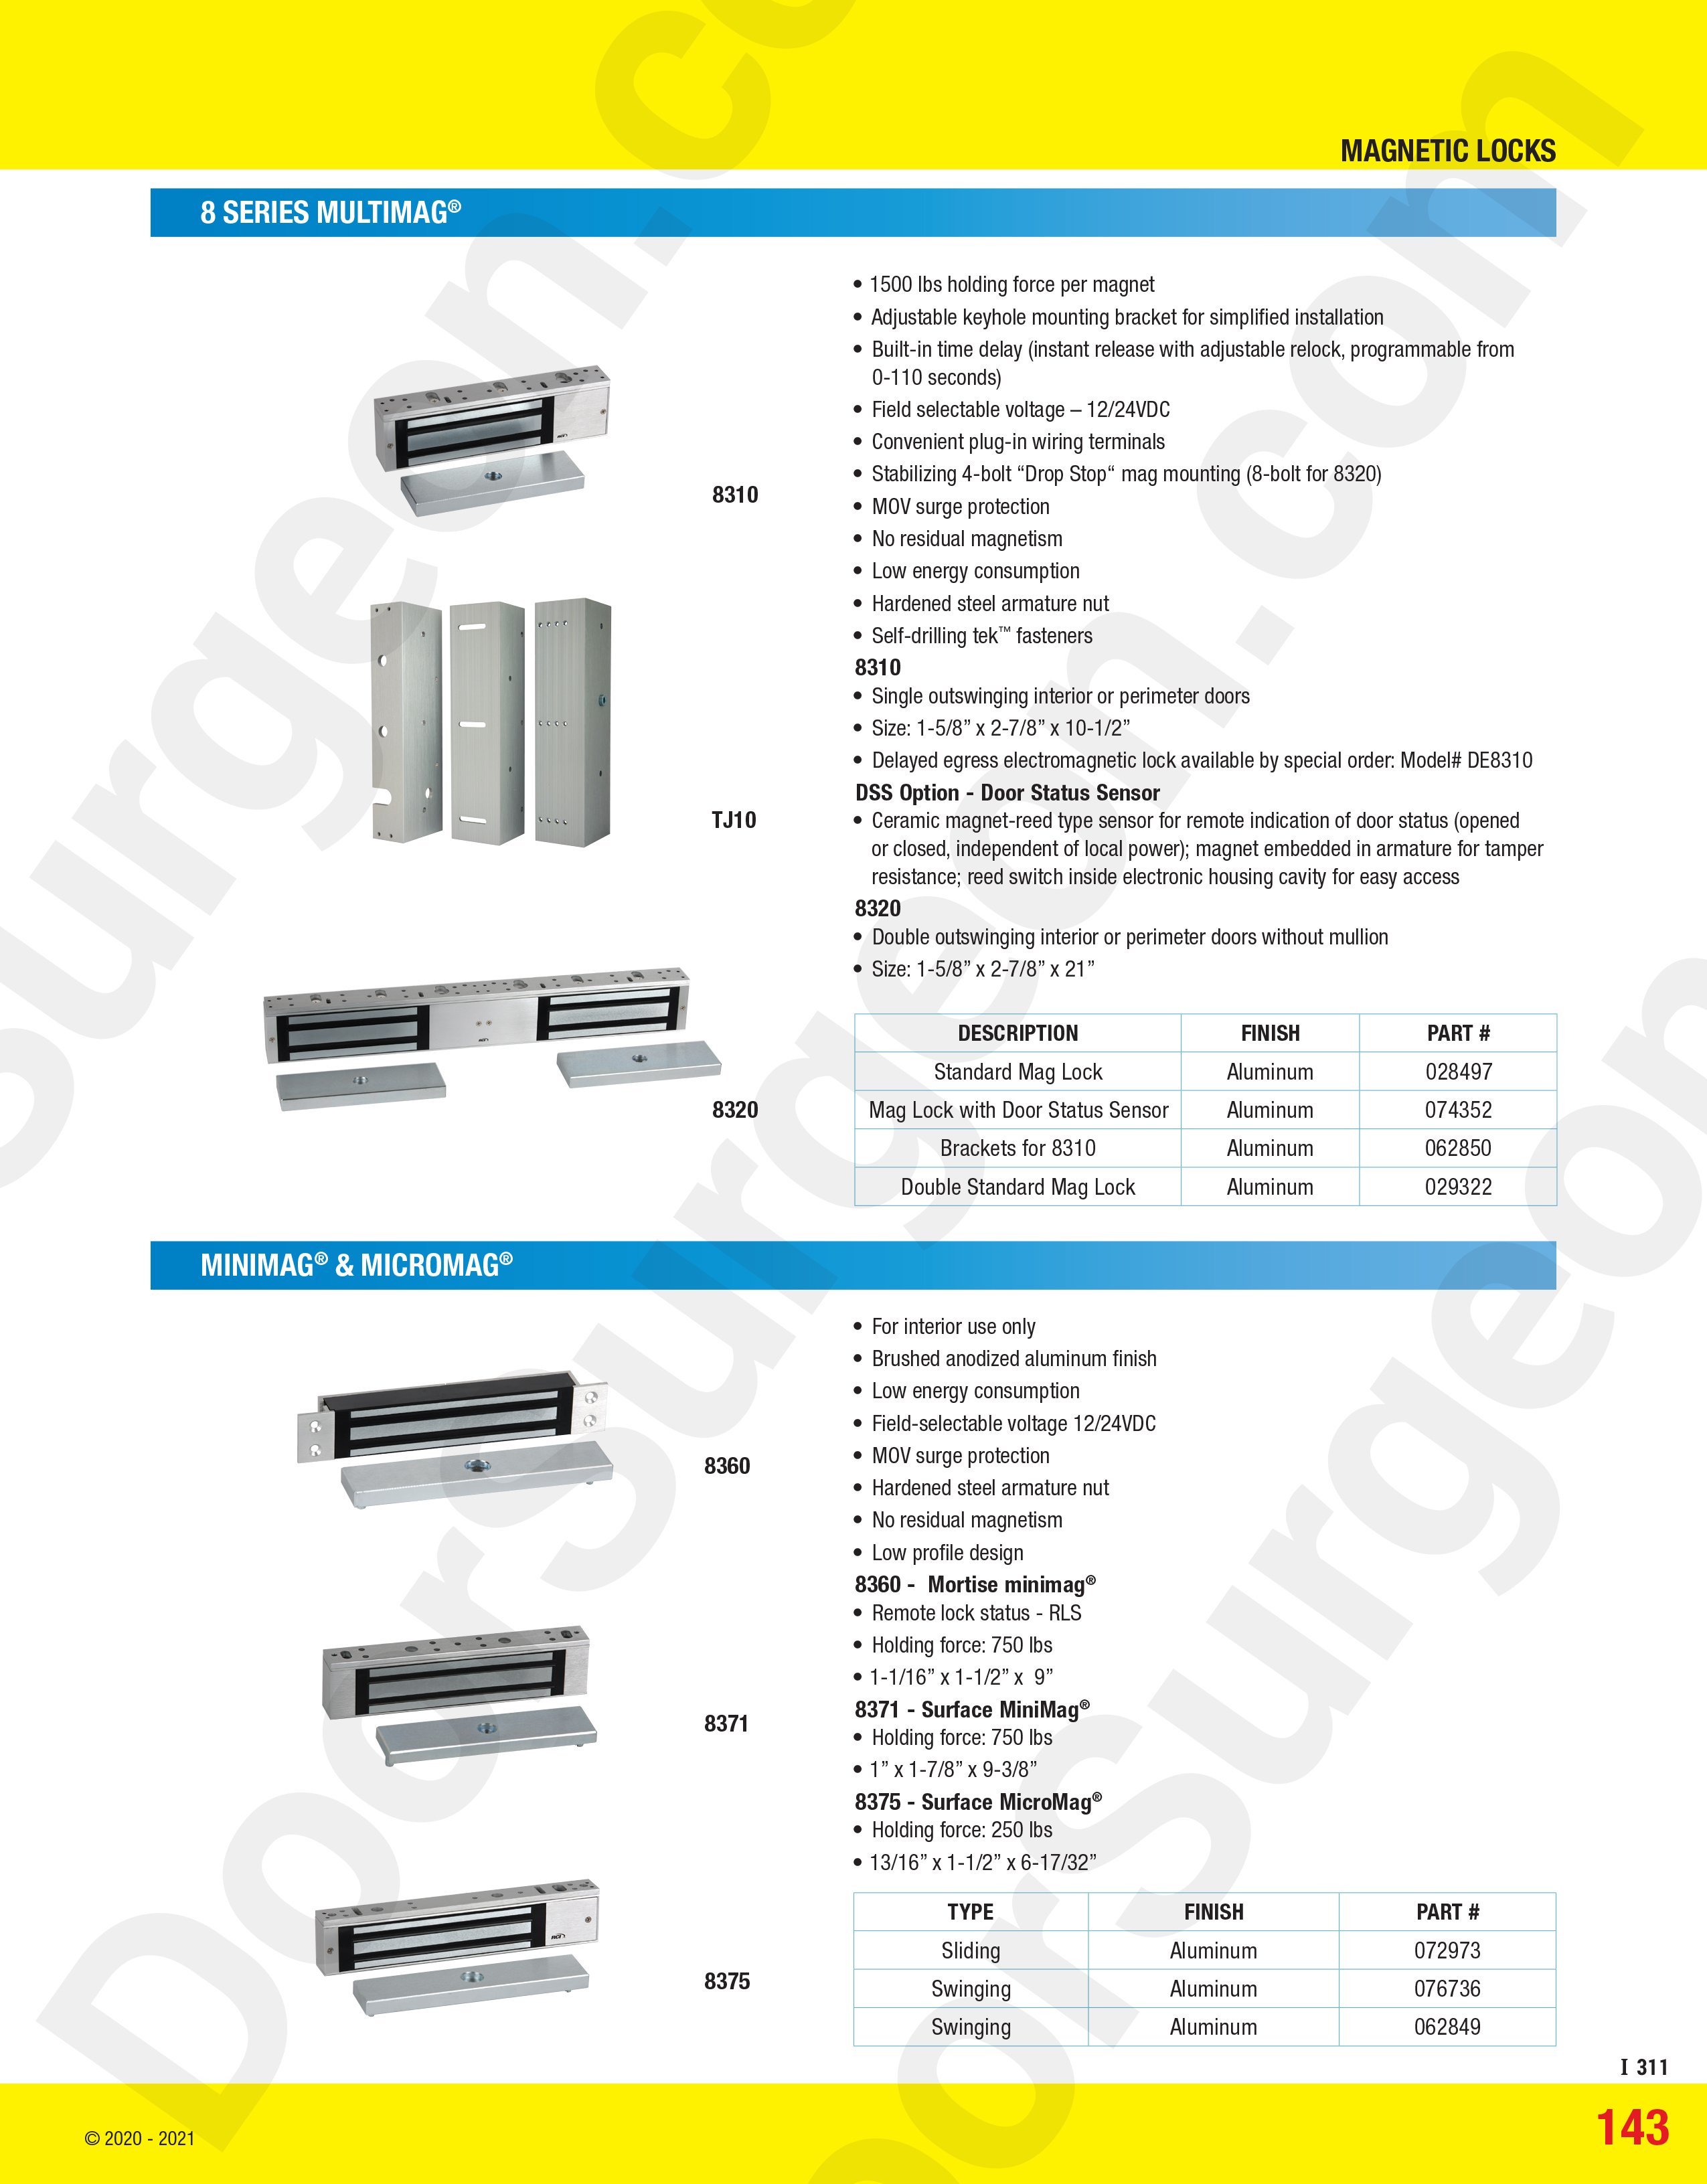 Magnetic locks multimag minimag micromag series for commercial industrial doors.